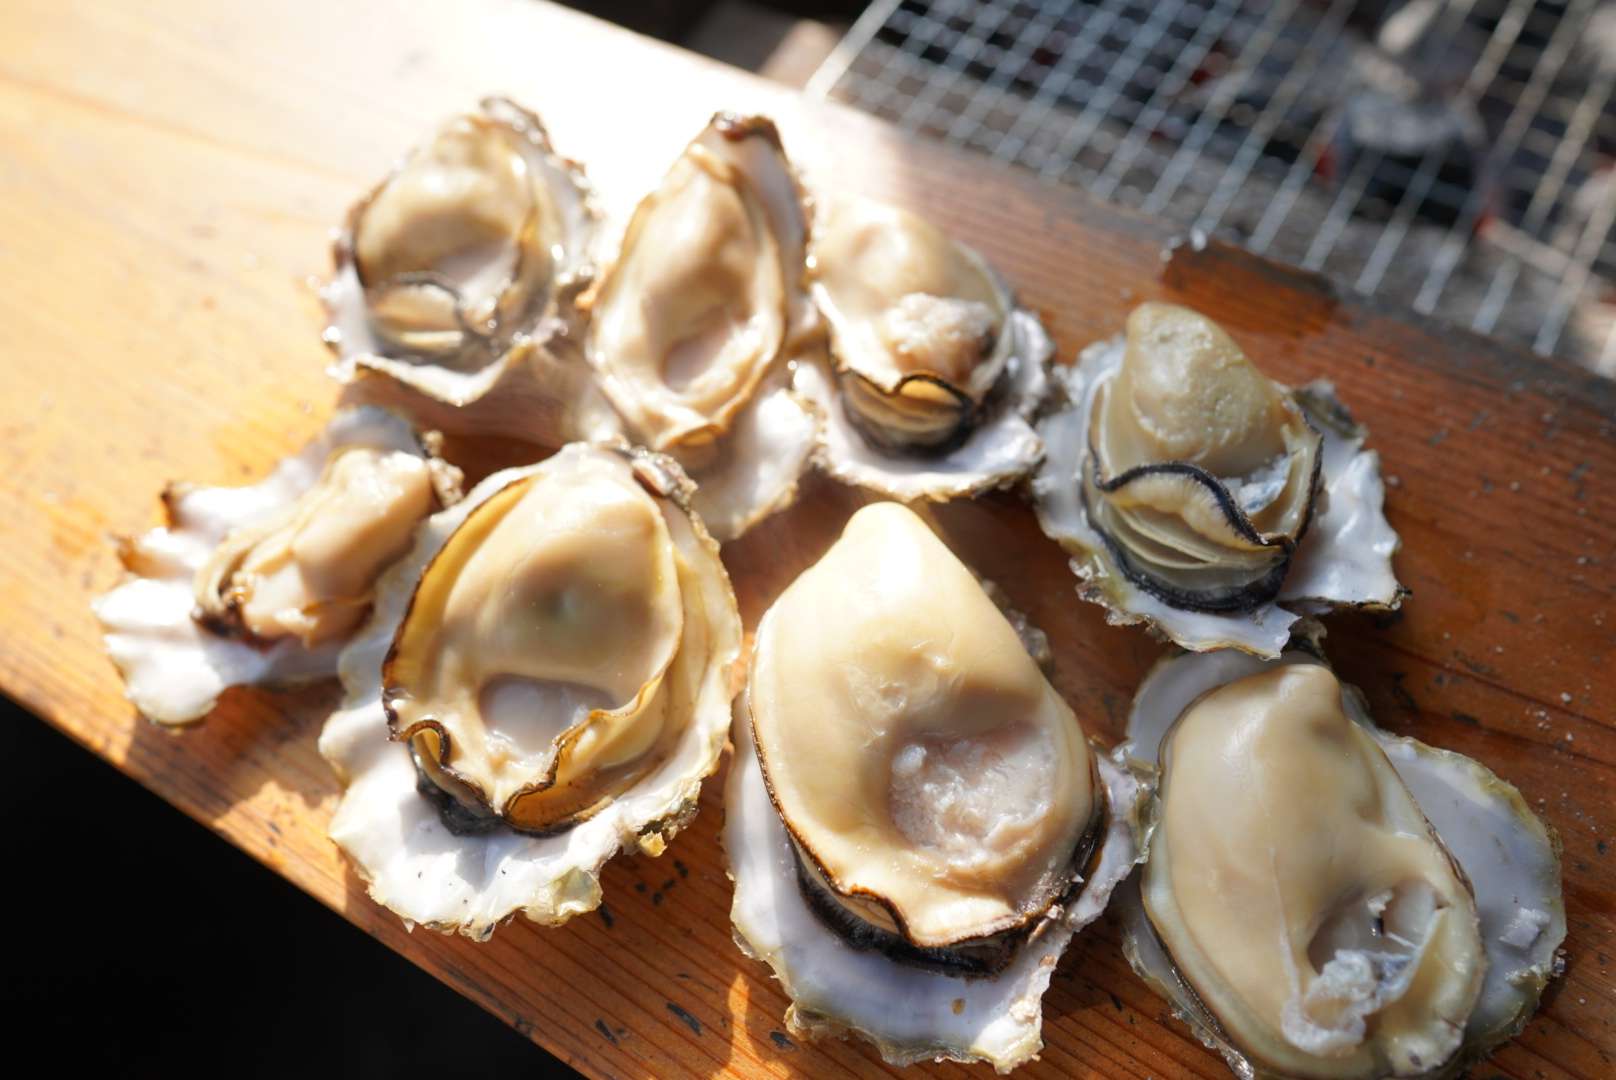 1/28(土)旅サラダで竹崎海産の「竹崎牡蠣」「竹崎蟹」が紹介されます